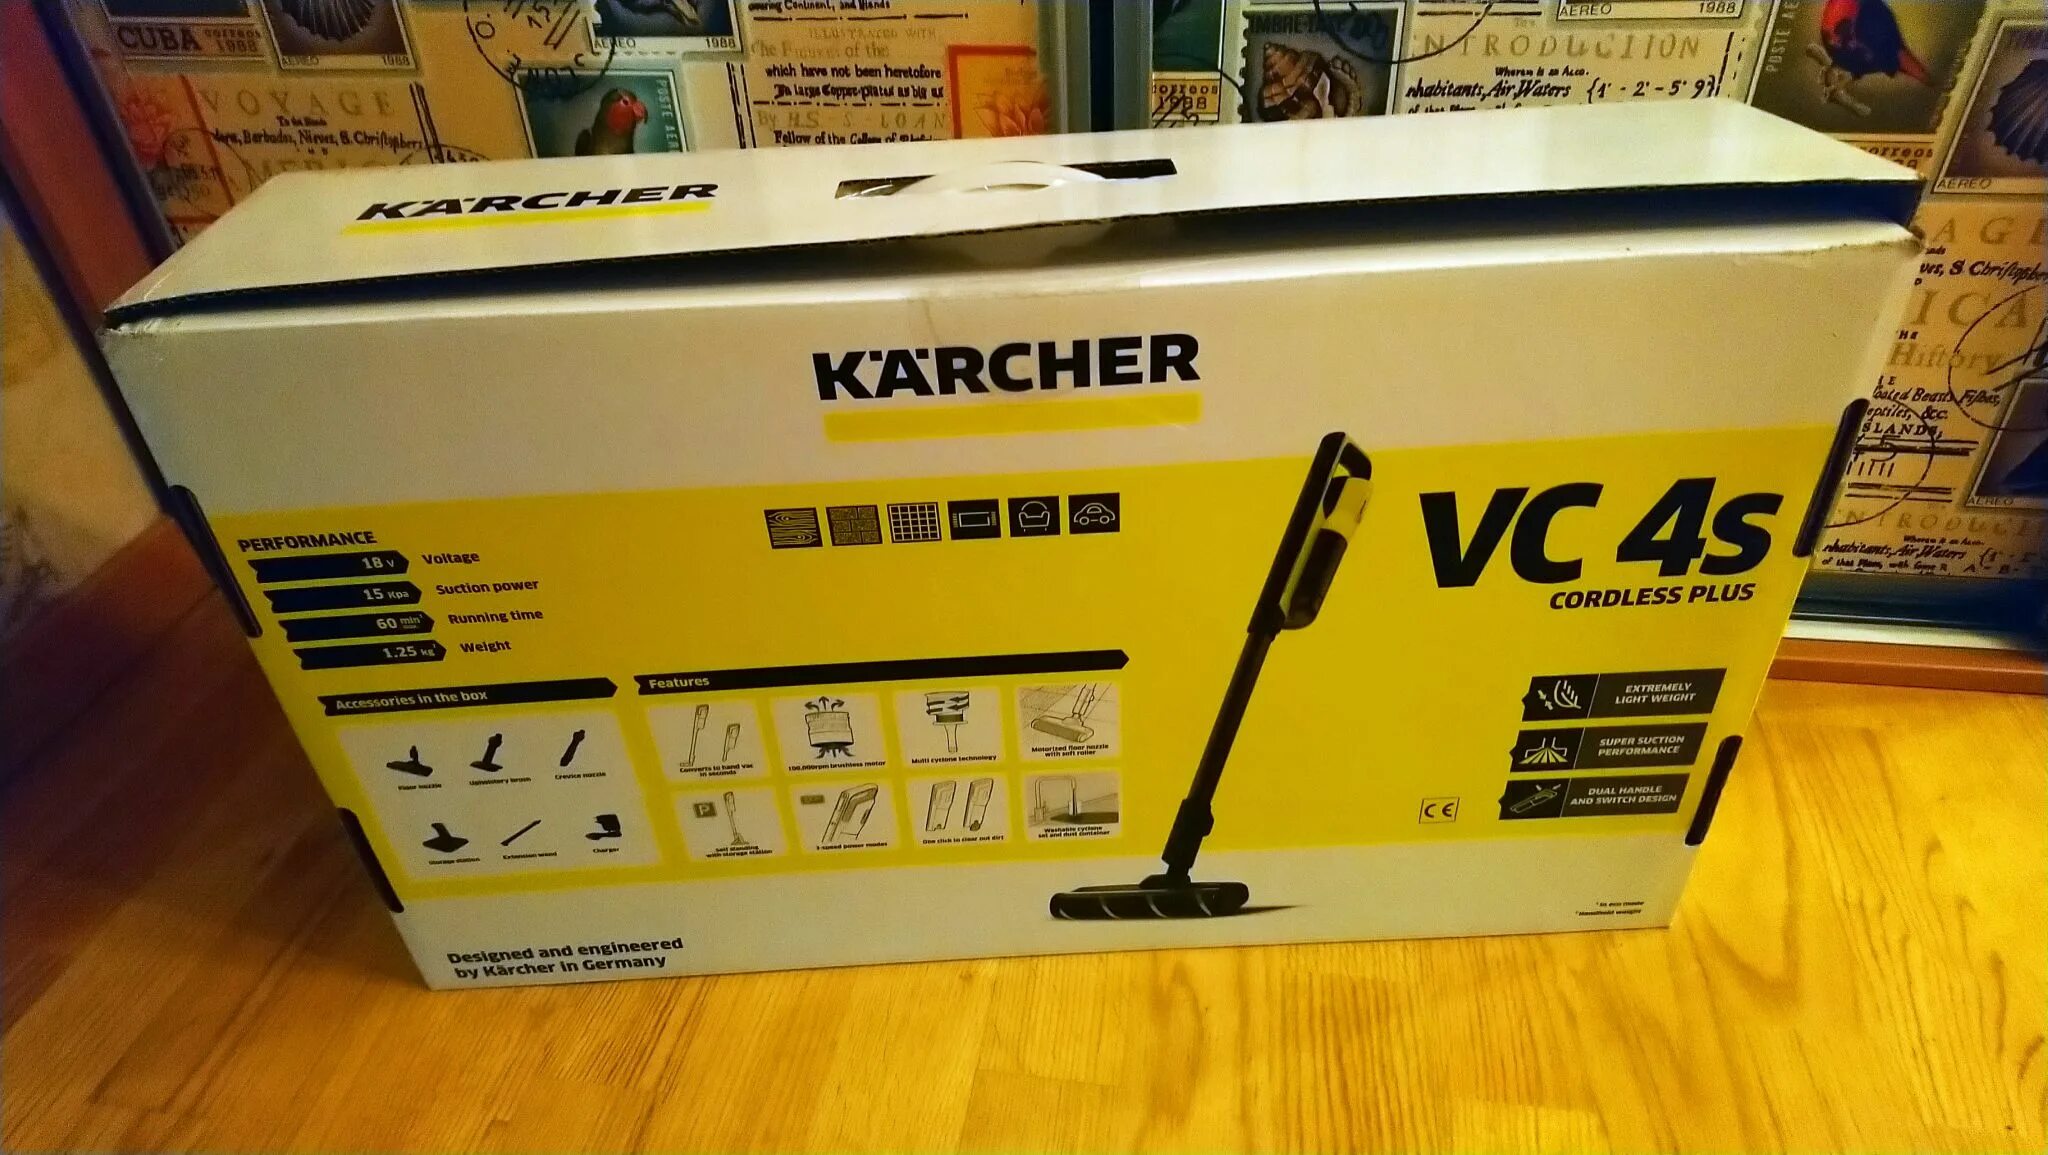 Vc 4 pet. Керхер пылесос VC 4s. Пылесос Karcher vc4. Пылесос Karcher VC 4s Cordless Plus. Karcher VC 4s запчасти.